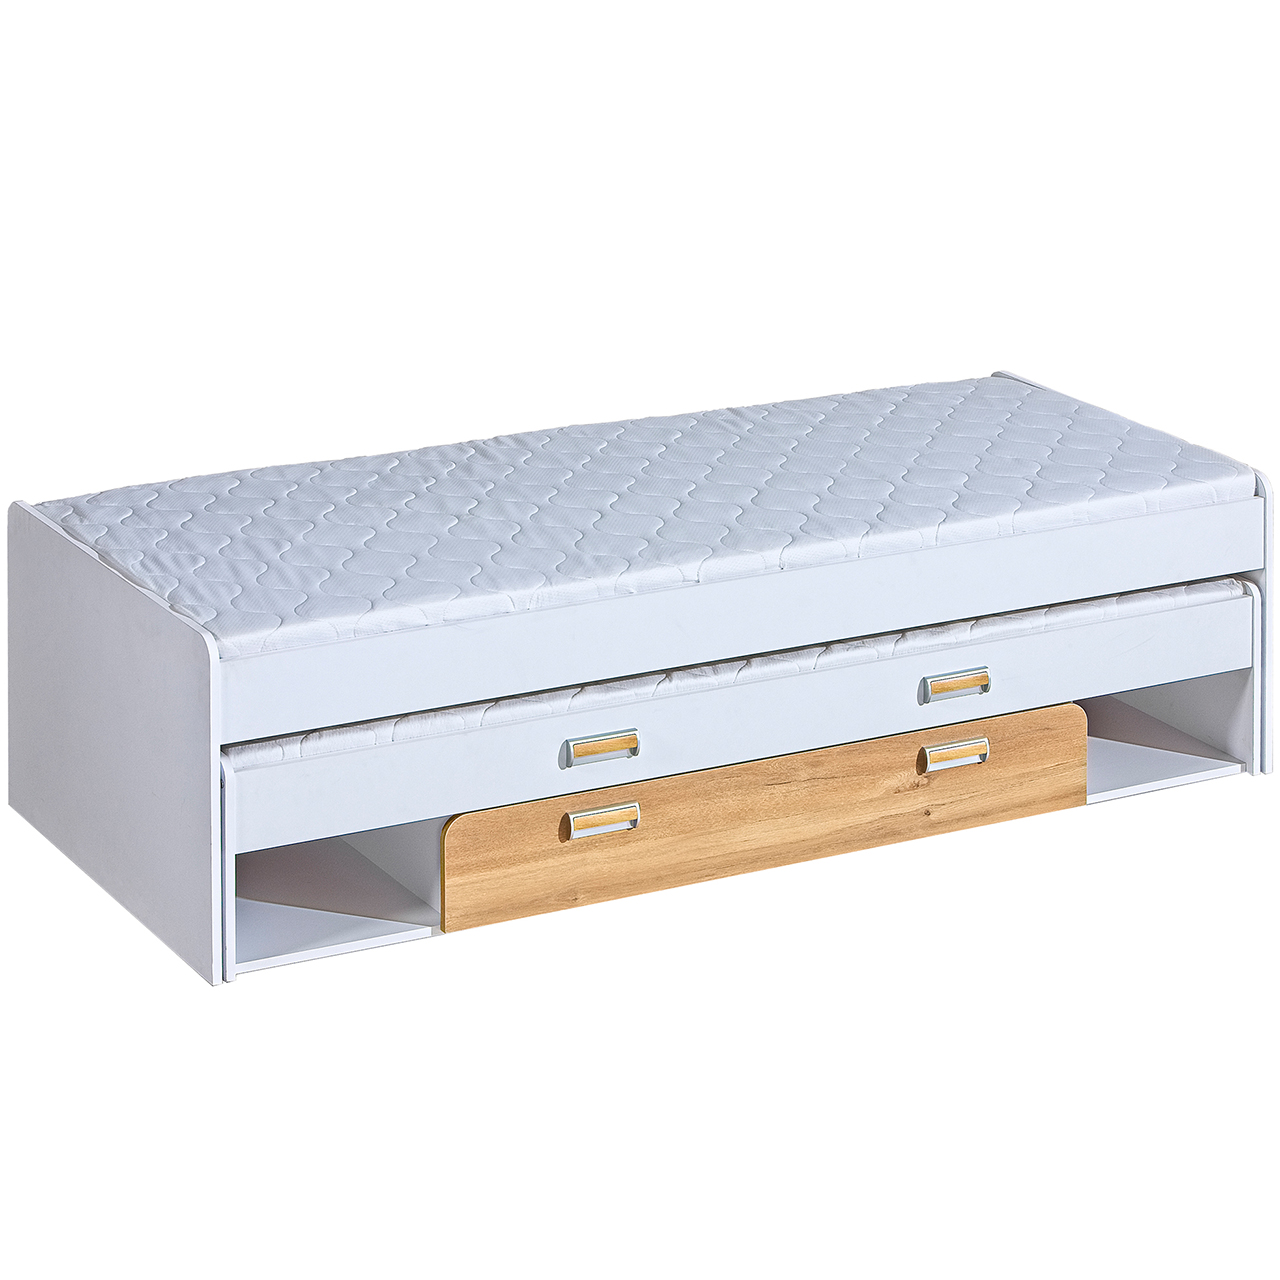 Bunk bed with storage LOREN LR16 white / oak nash